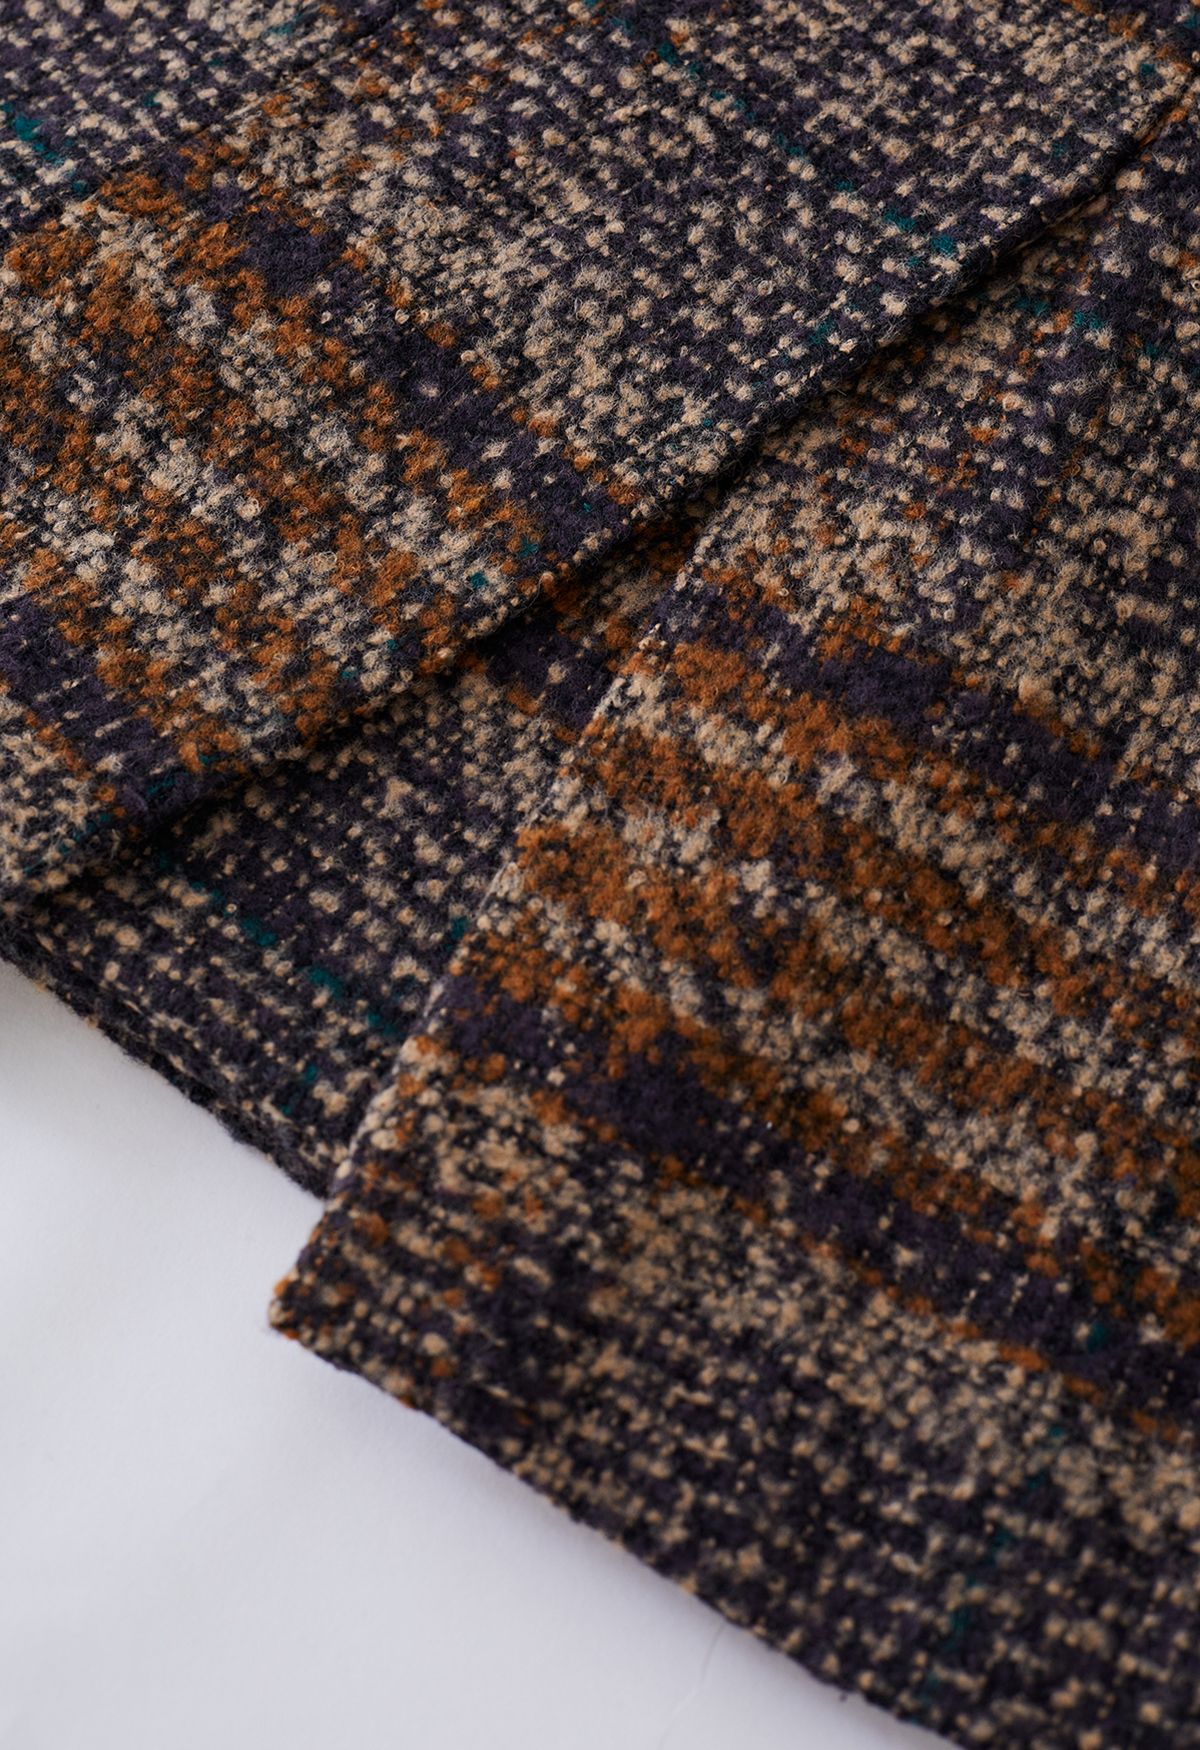 Karierter, zweireihiger Mantel aus Wollmischung im Retro-Stil in Braun